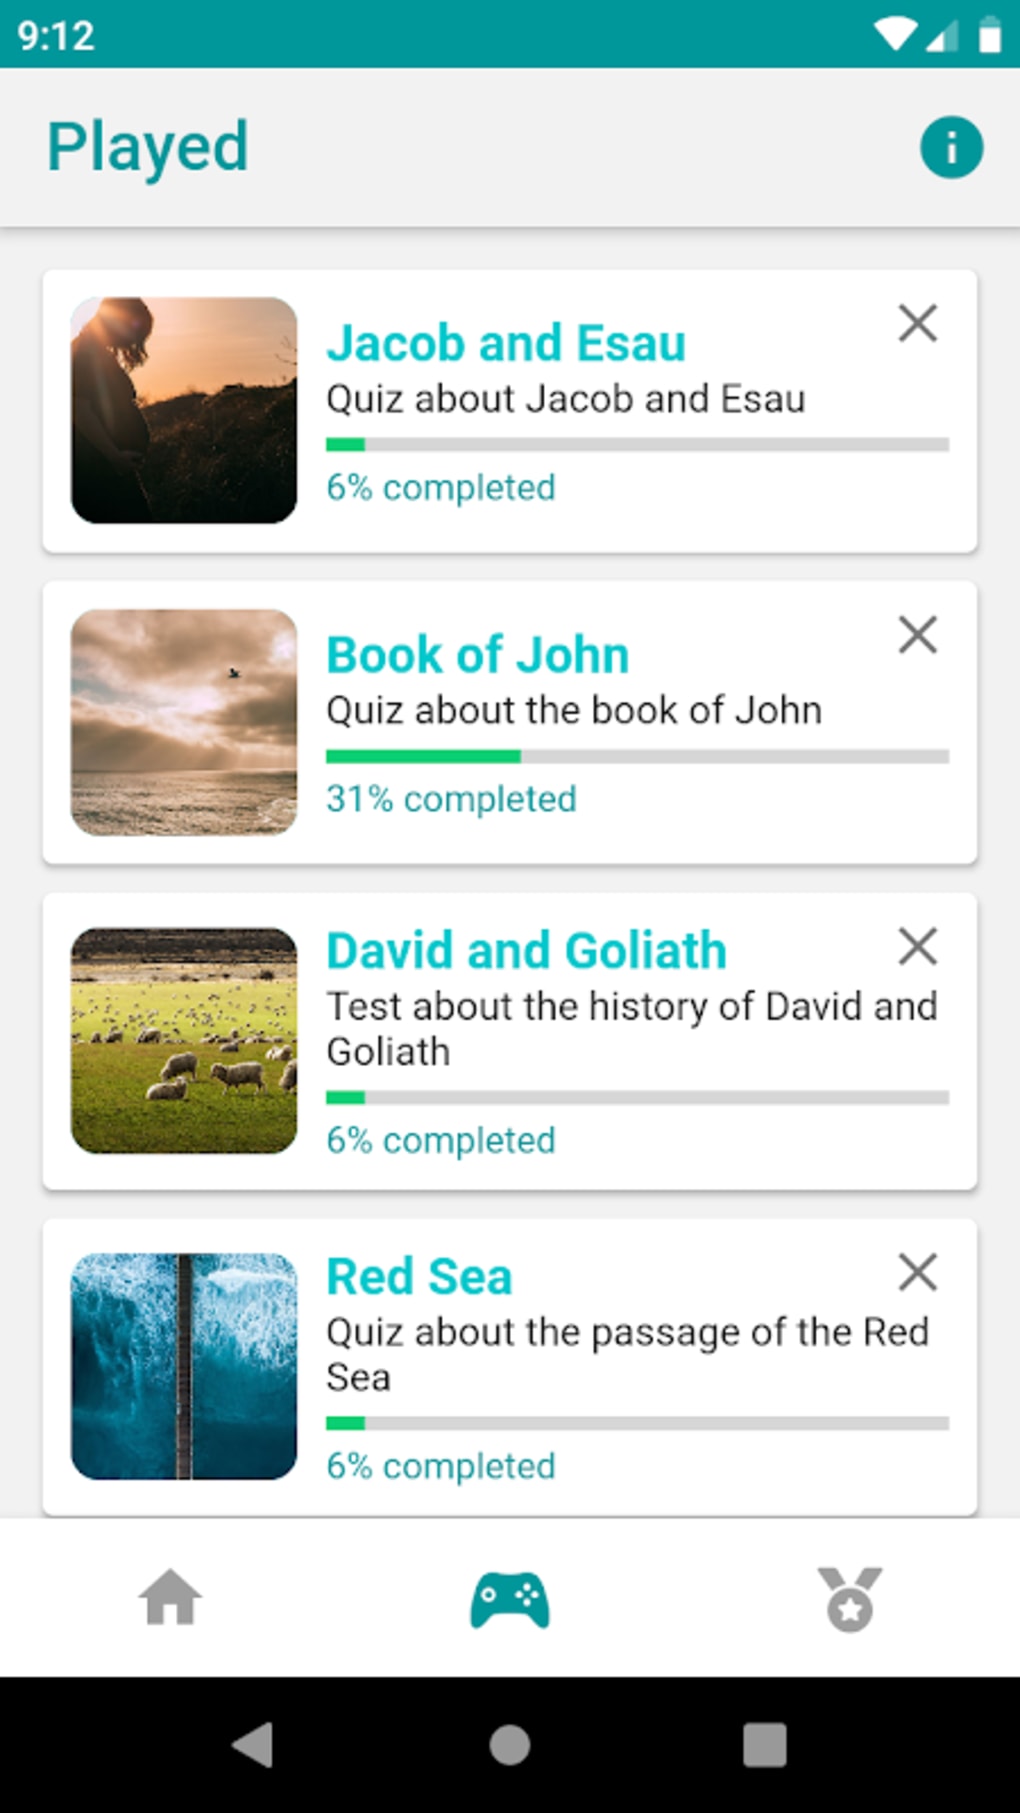 Perguntas da Bíblia - Quiz APK voor Android Download